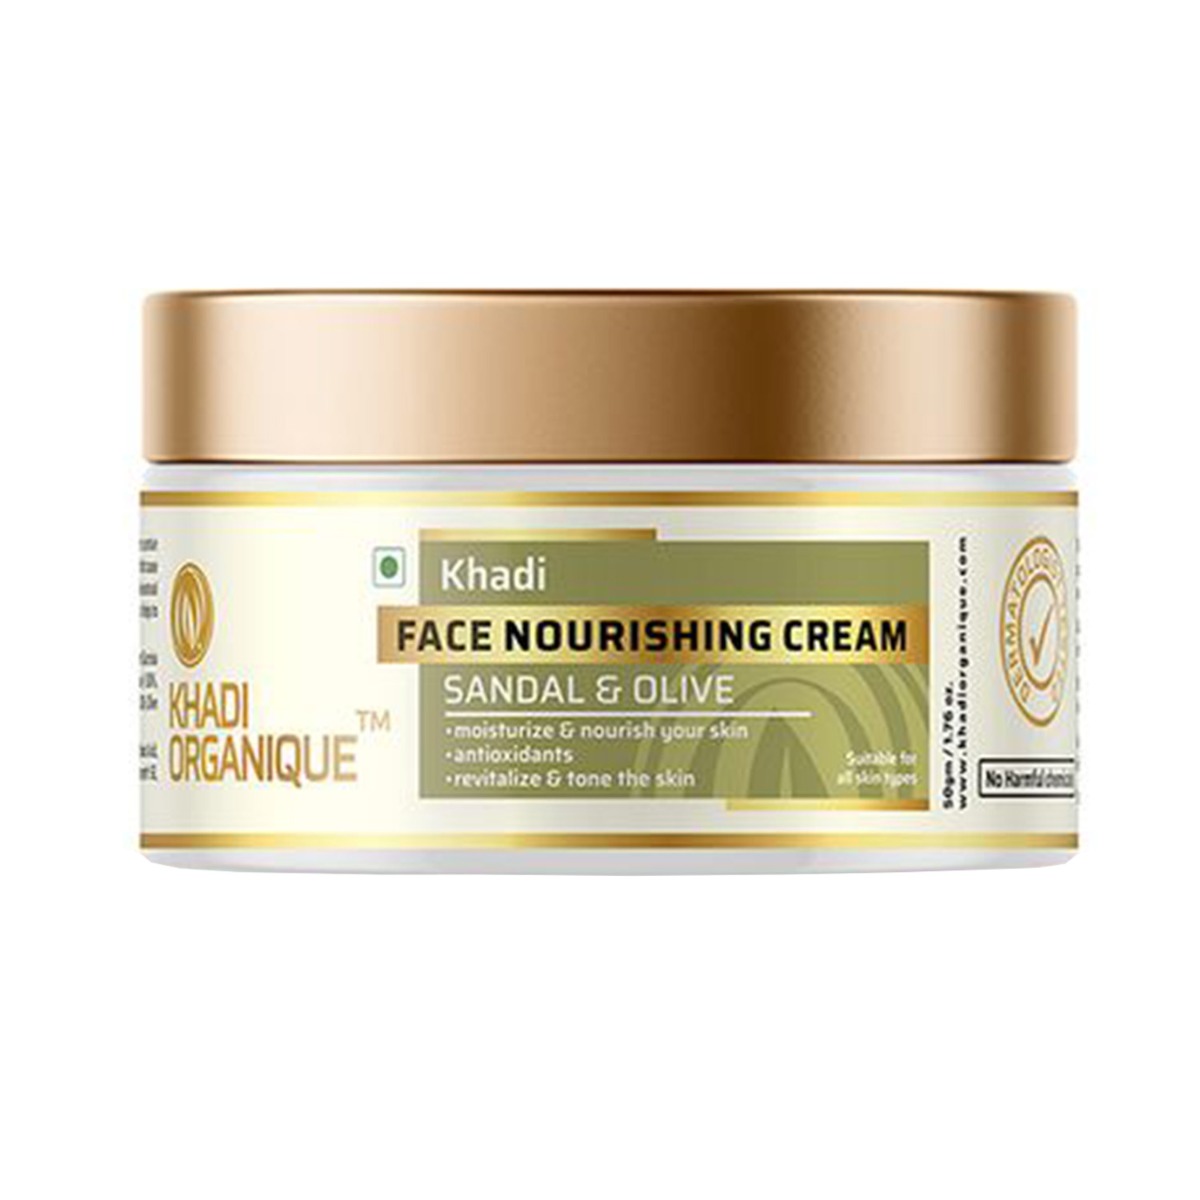 Khadi Organique Sandal & Olive Face Nourishing Cream, 50gm